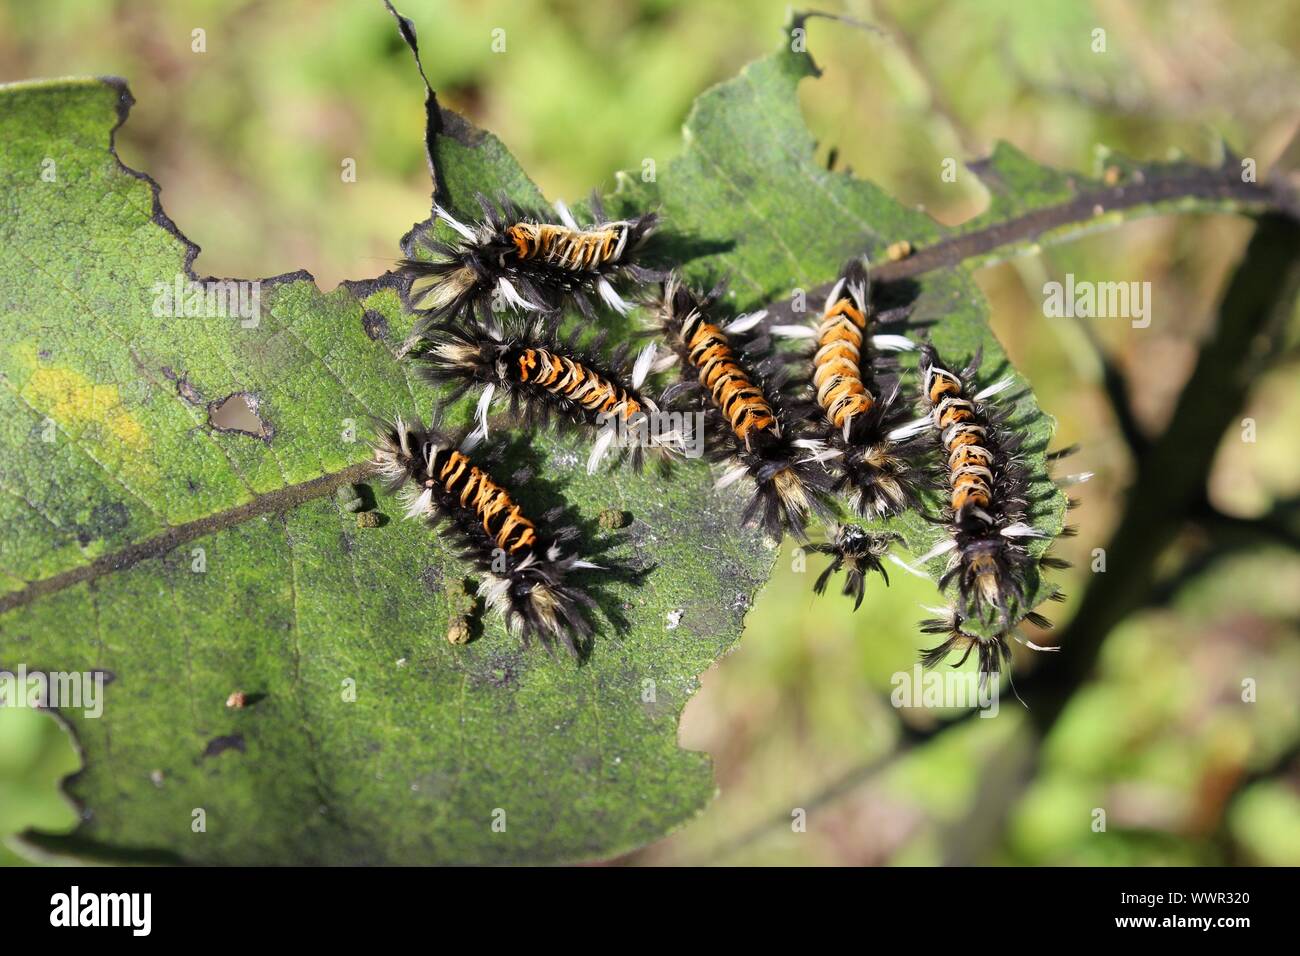 Milkweed Tussock Caterpillars On A Chewed Up Milkweed Leaf Stock Photo